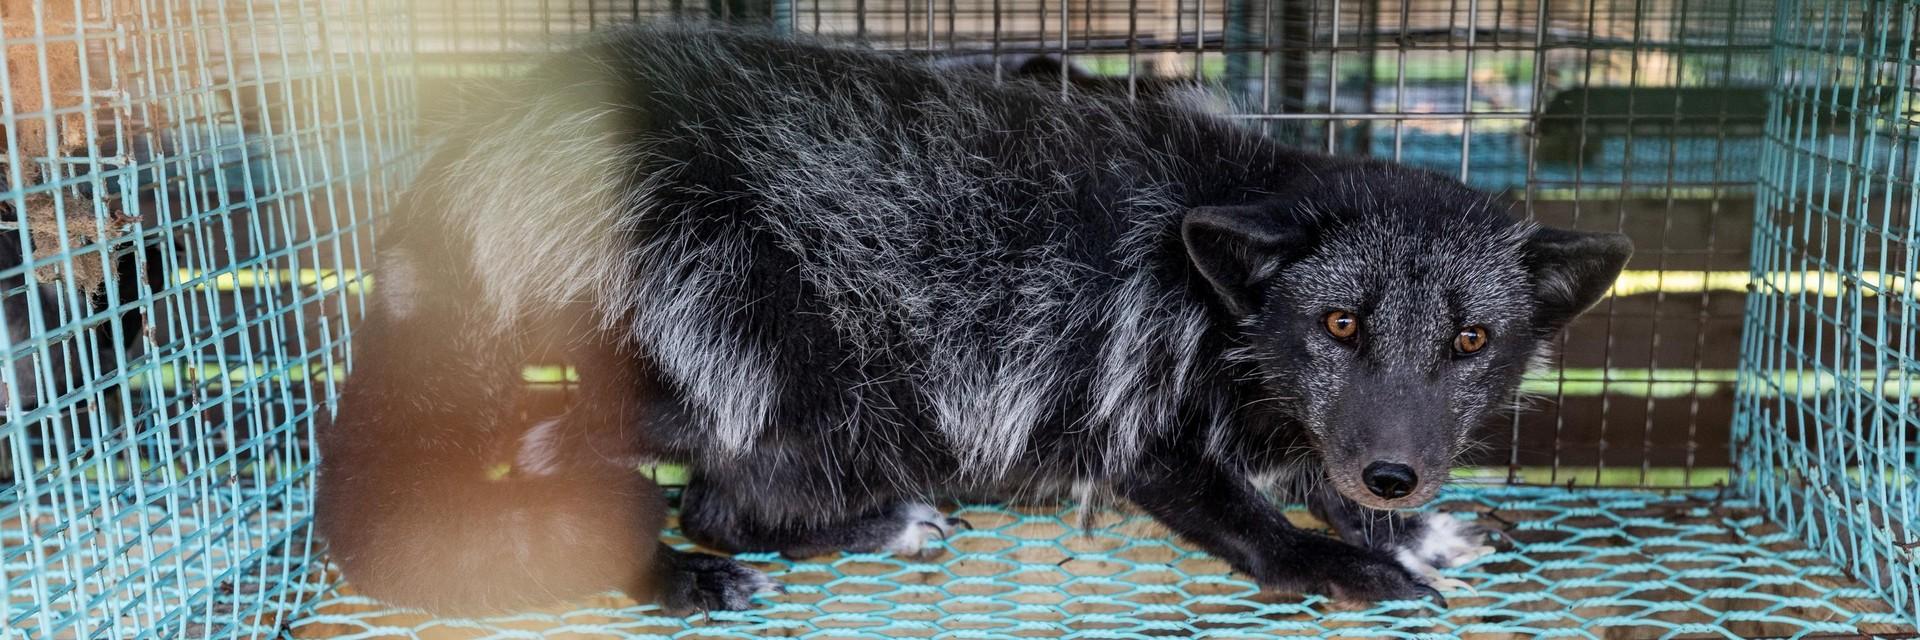 Black mink kept in a cage